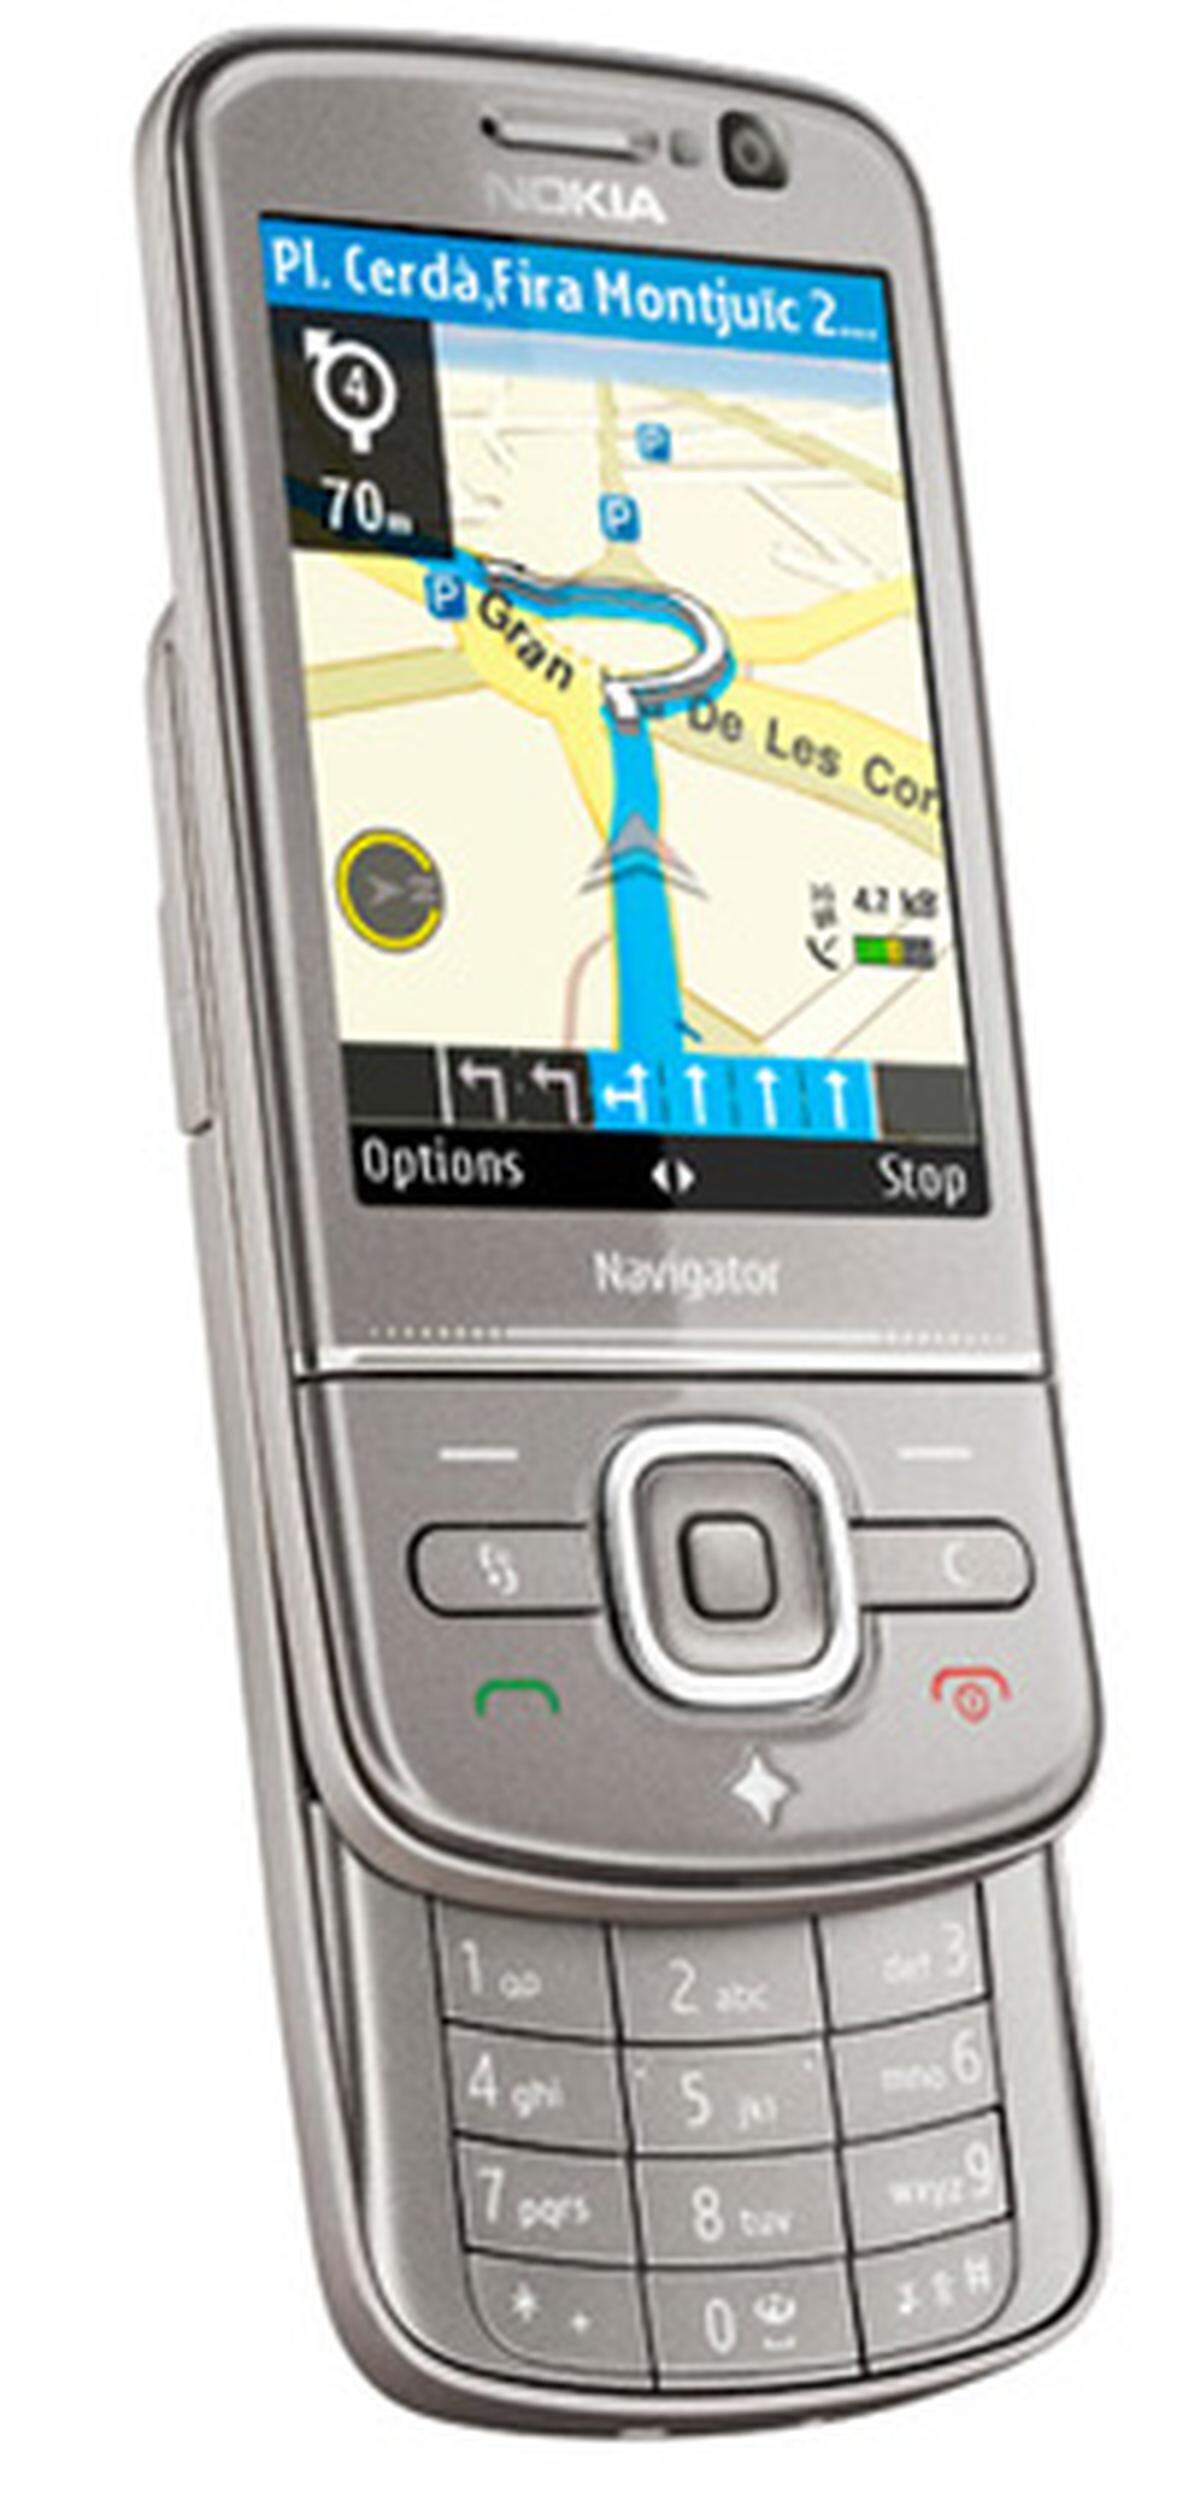 Mit verbessertem Nokia Maps und einer mitgelieferten Auto-Halterung will Nokia das 6710 als waschechtes Navi positionieren. Telefonieren kann man damit natürlich auch noch. Der Preis soll 300 Euro betragen.